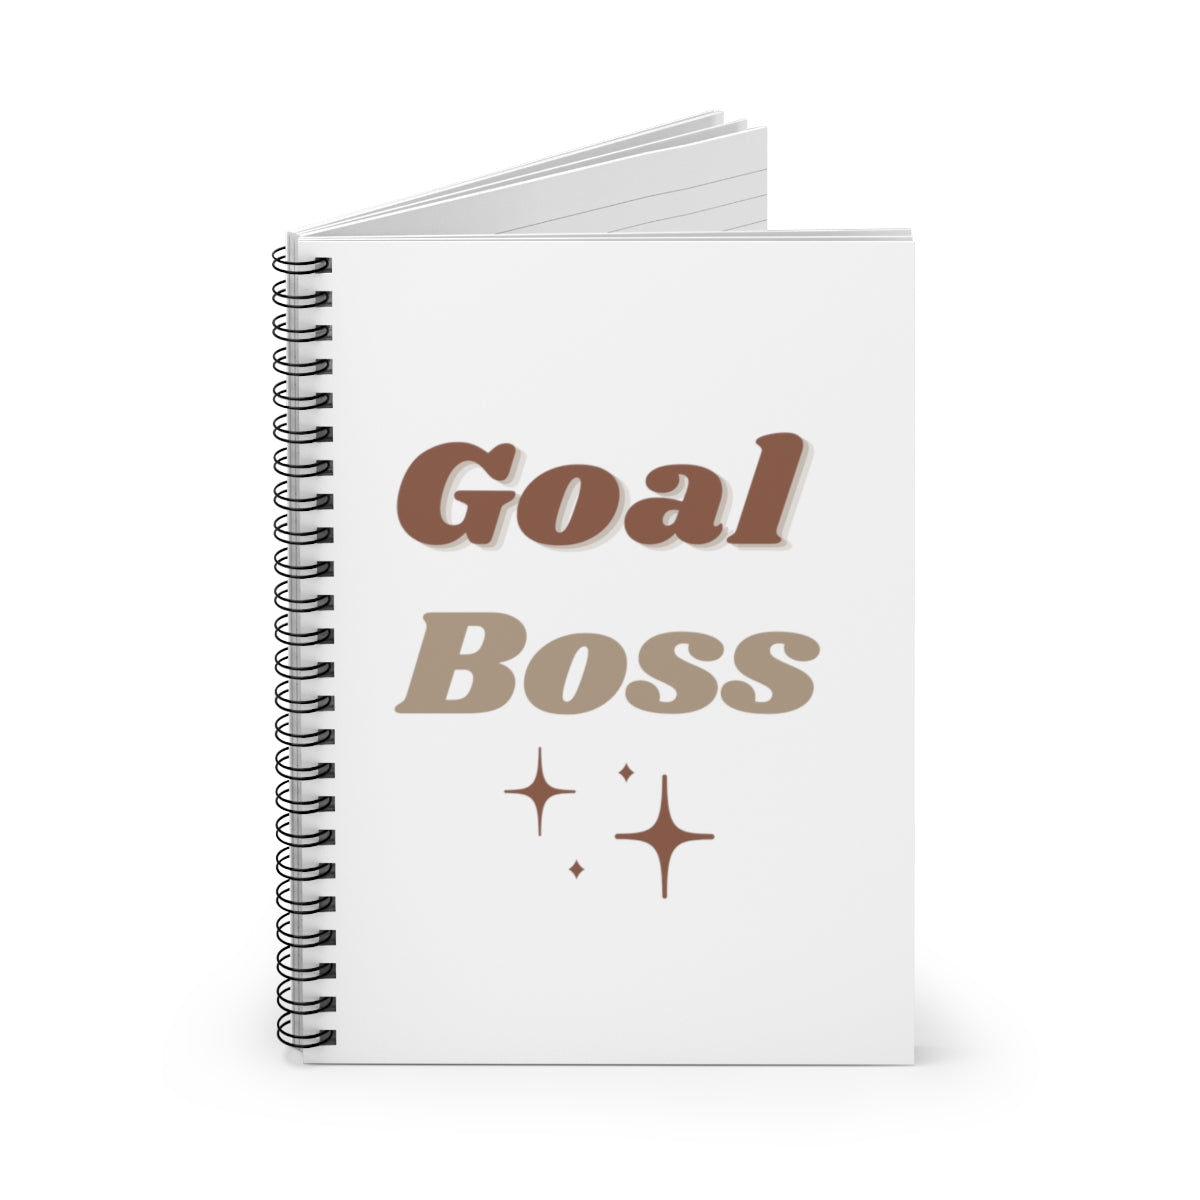 Goal Boss Motivational Durable Journal- Motivational Notebook, Inspirational Notebooks, Women’s Inspirational Journal, Self-Care Gift for Friends, Daily Motivational Journal